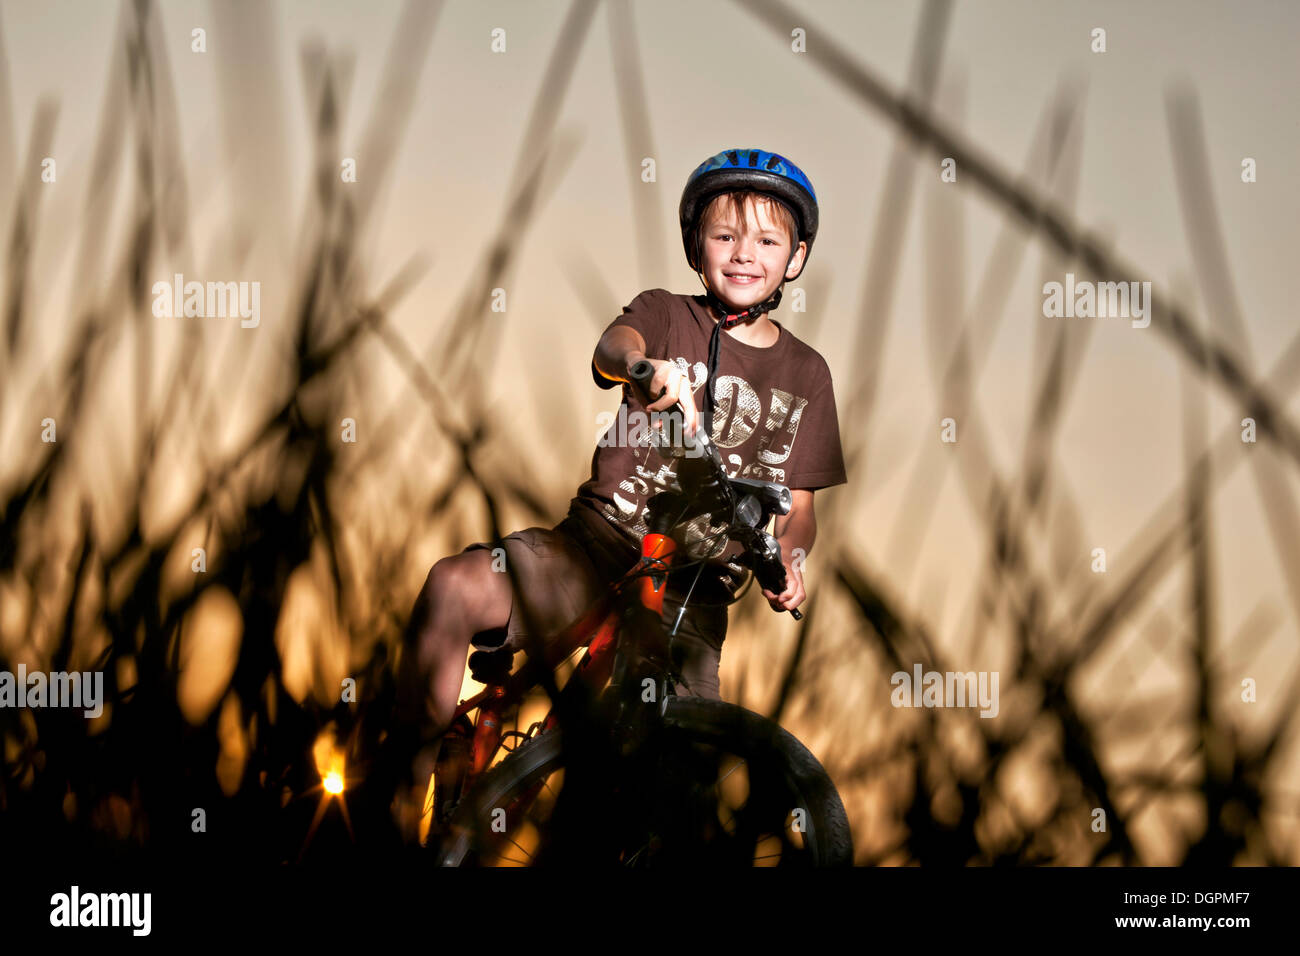 Boy riding a mountain bike Stock Photo